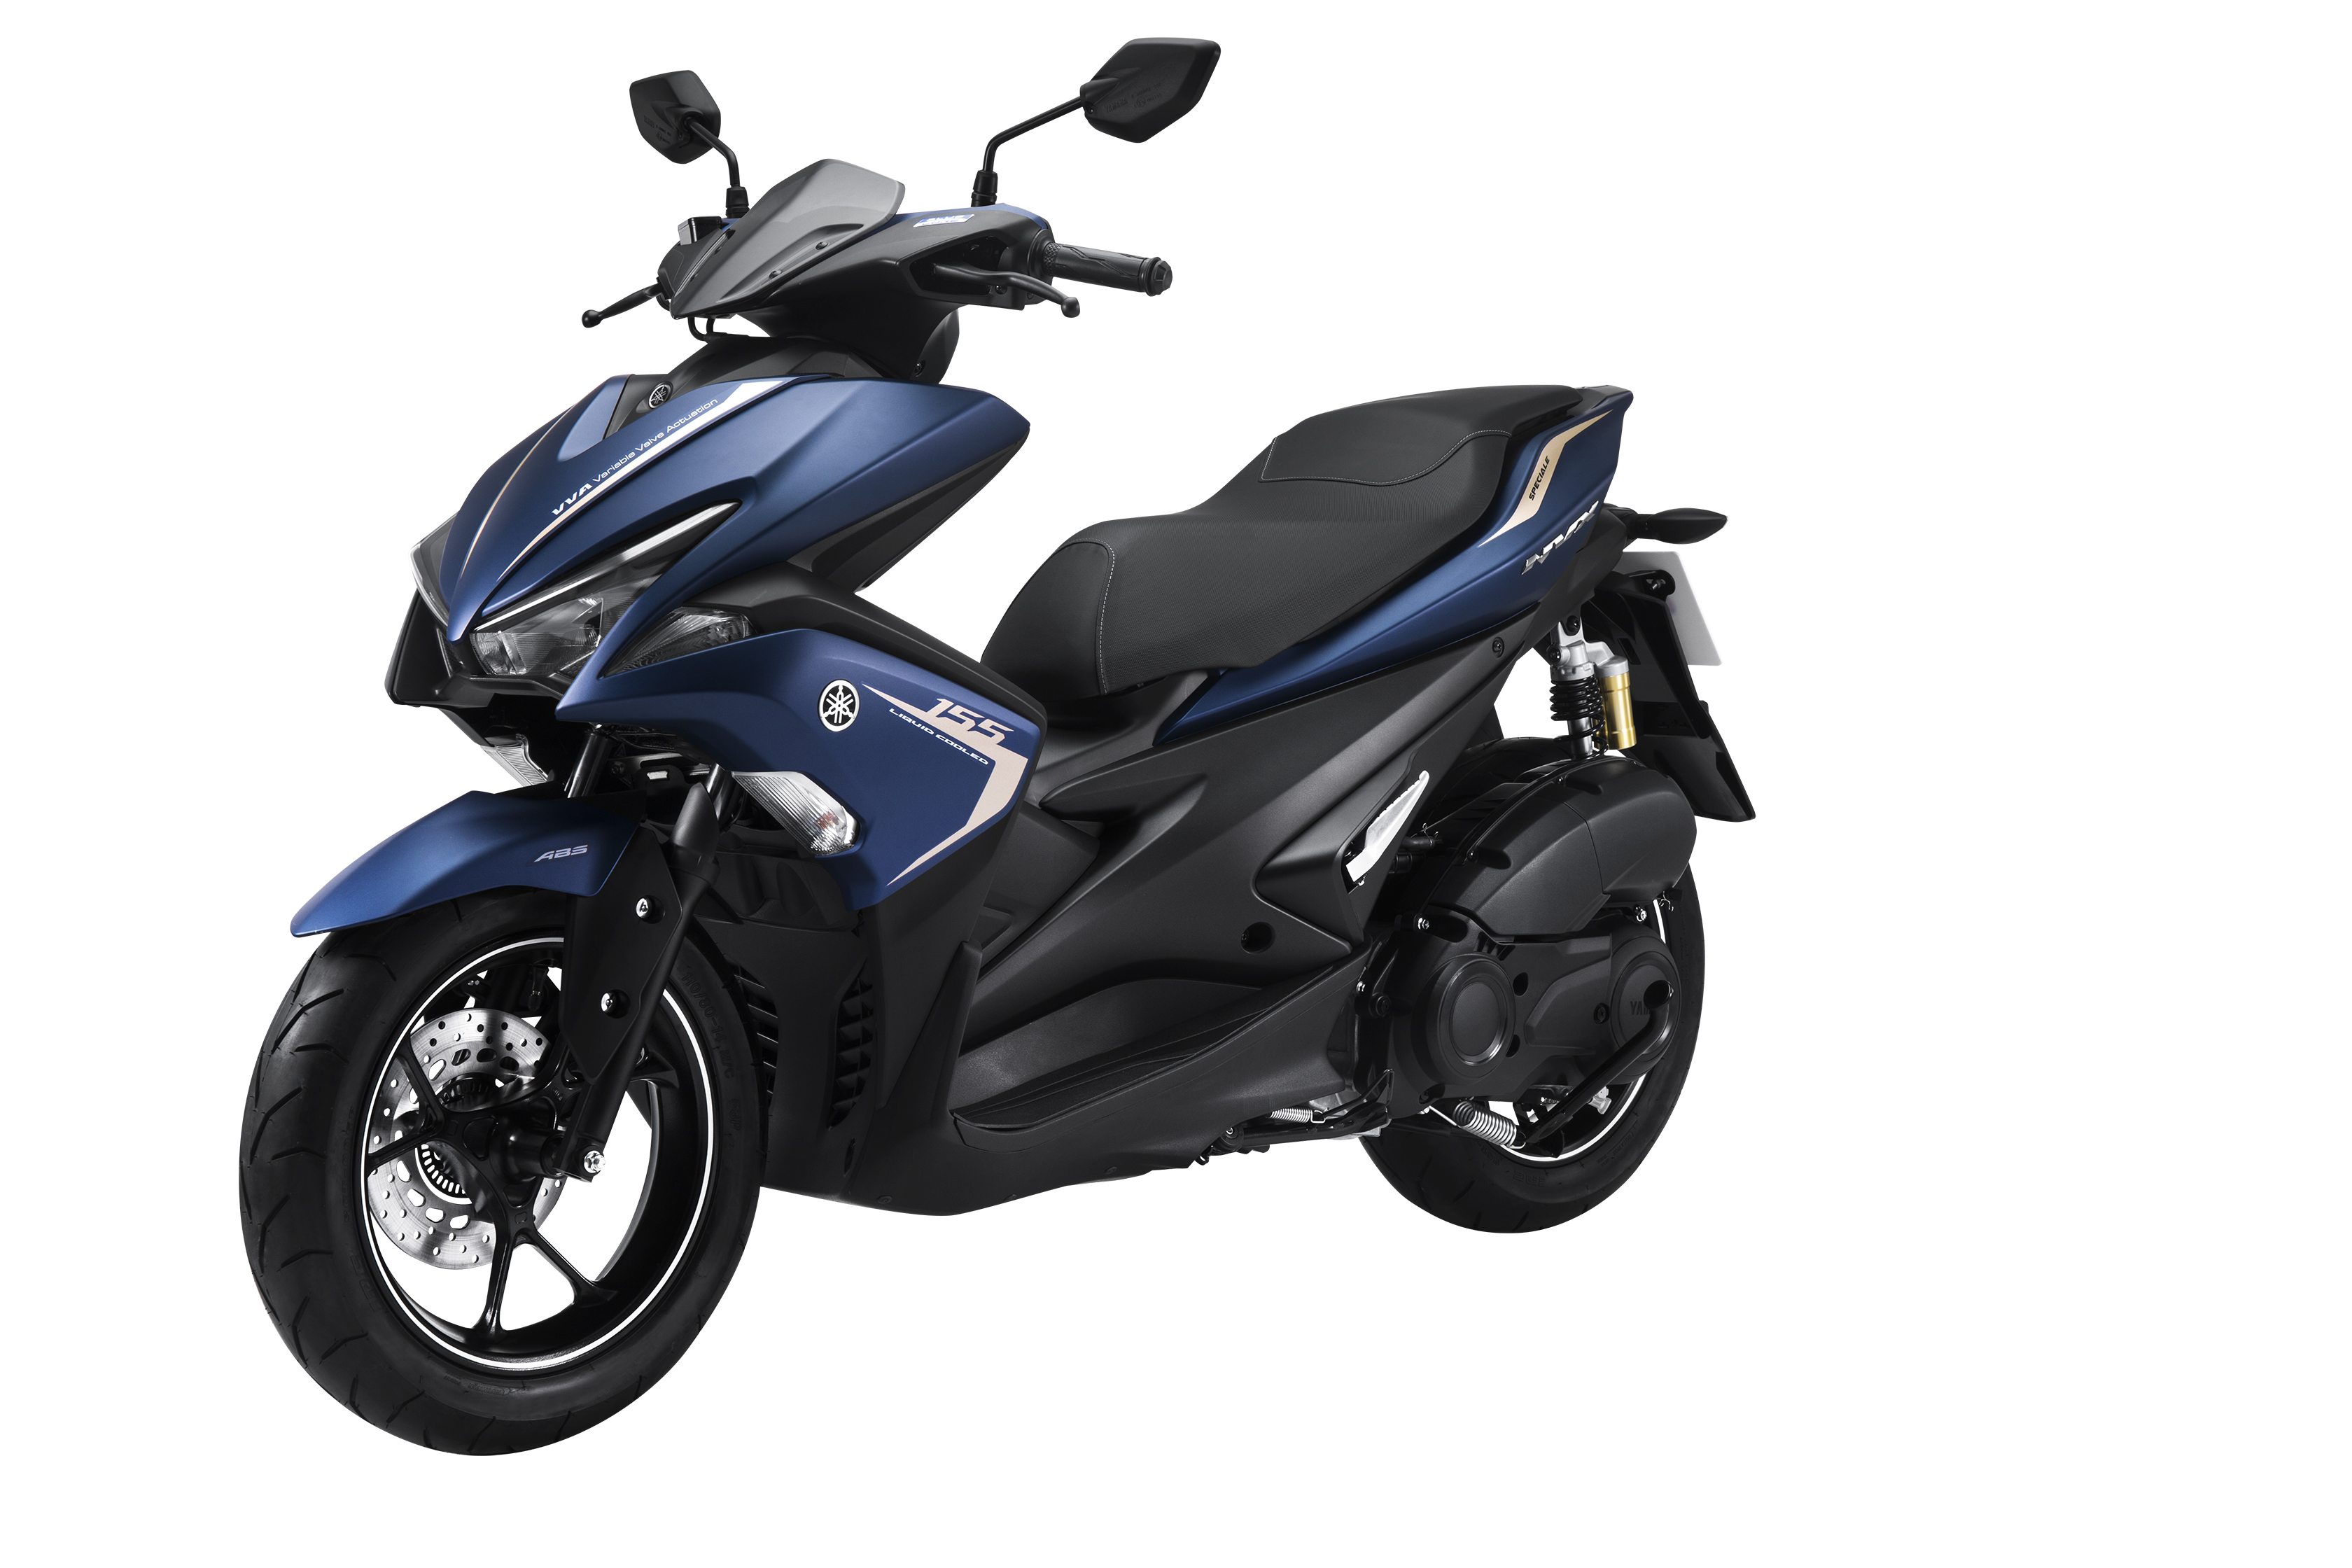 NVX lột xác với phiên bản màu mới cực cá tính - Yamaha Motor Việt Nam